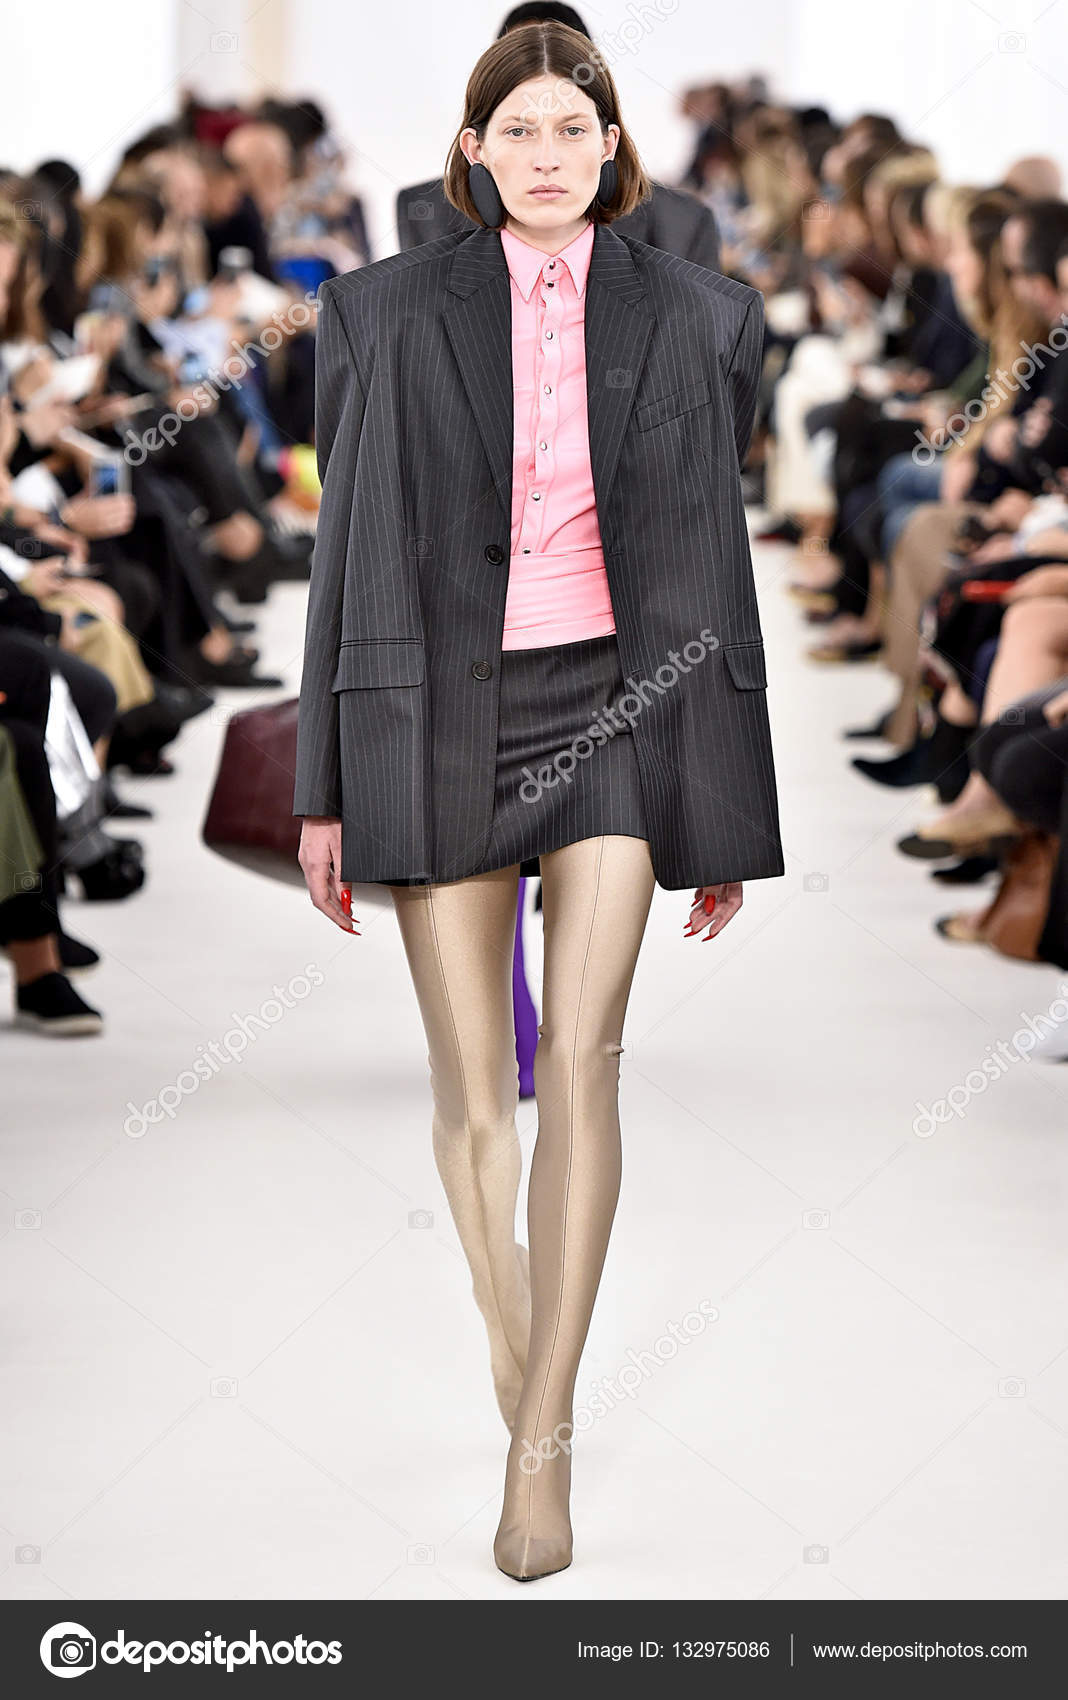 Balenciaga designed by Demma Gvasalia show – Stock Editorial Photo ...